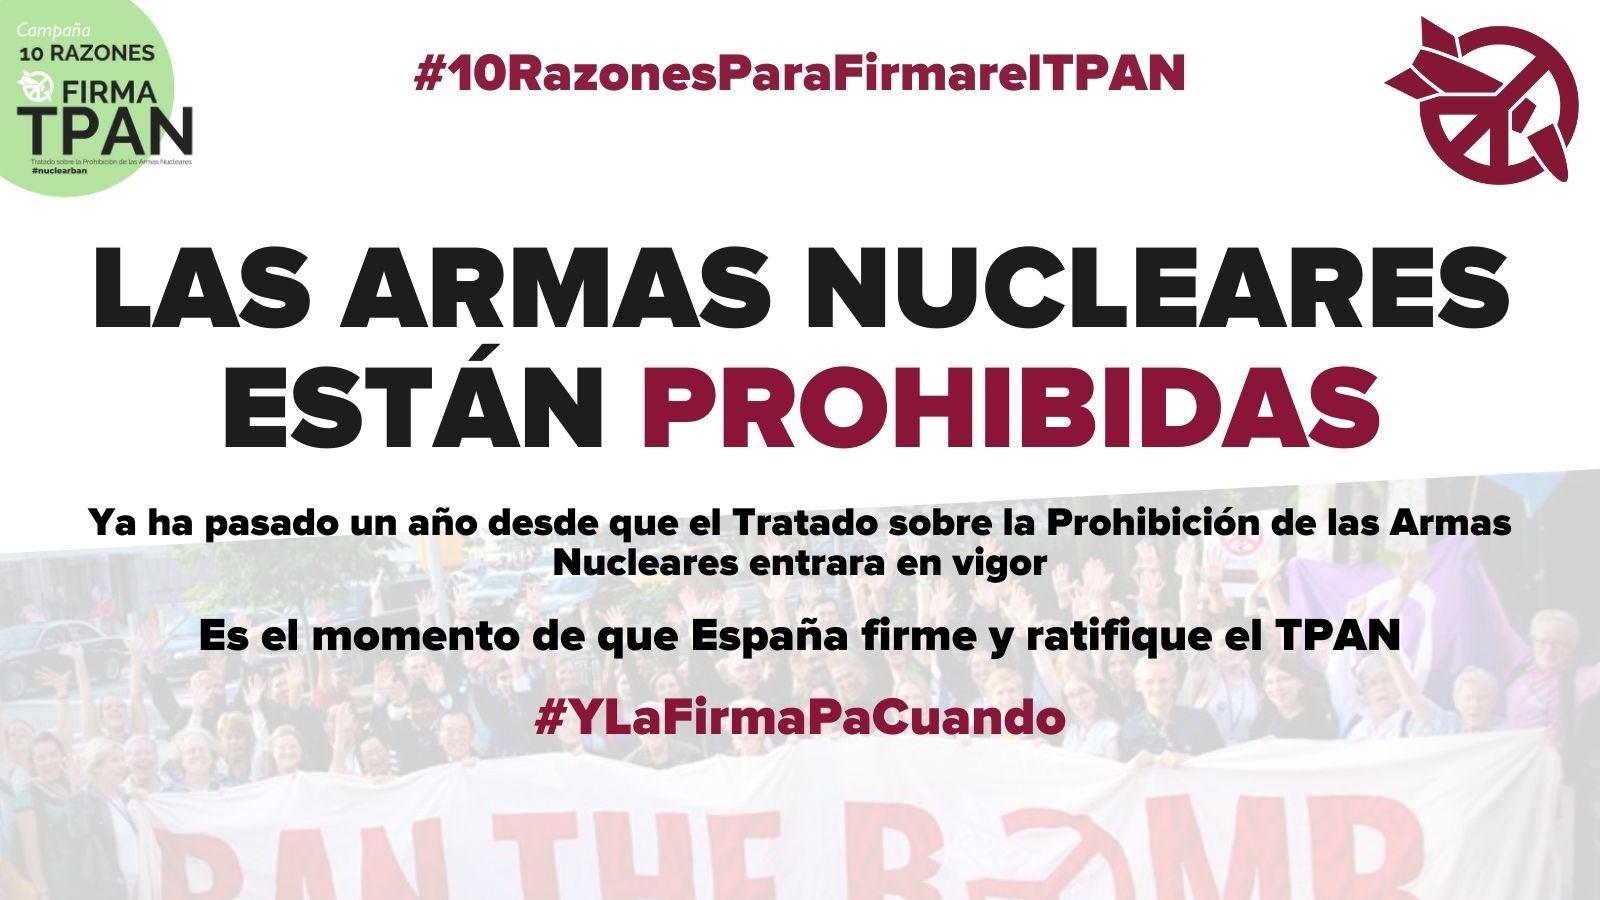 Petición de la Campaña #10RazonesFirmaTPAN al Gobierno de España